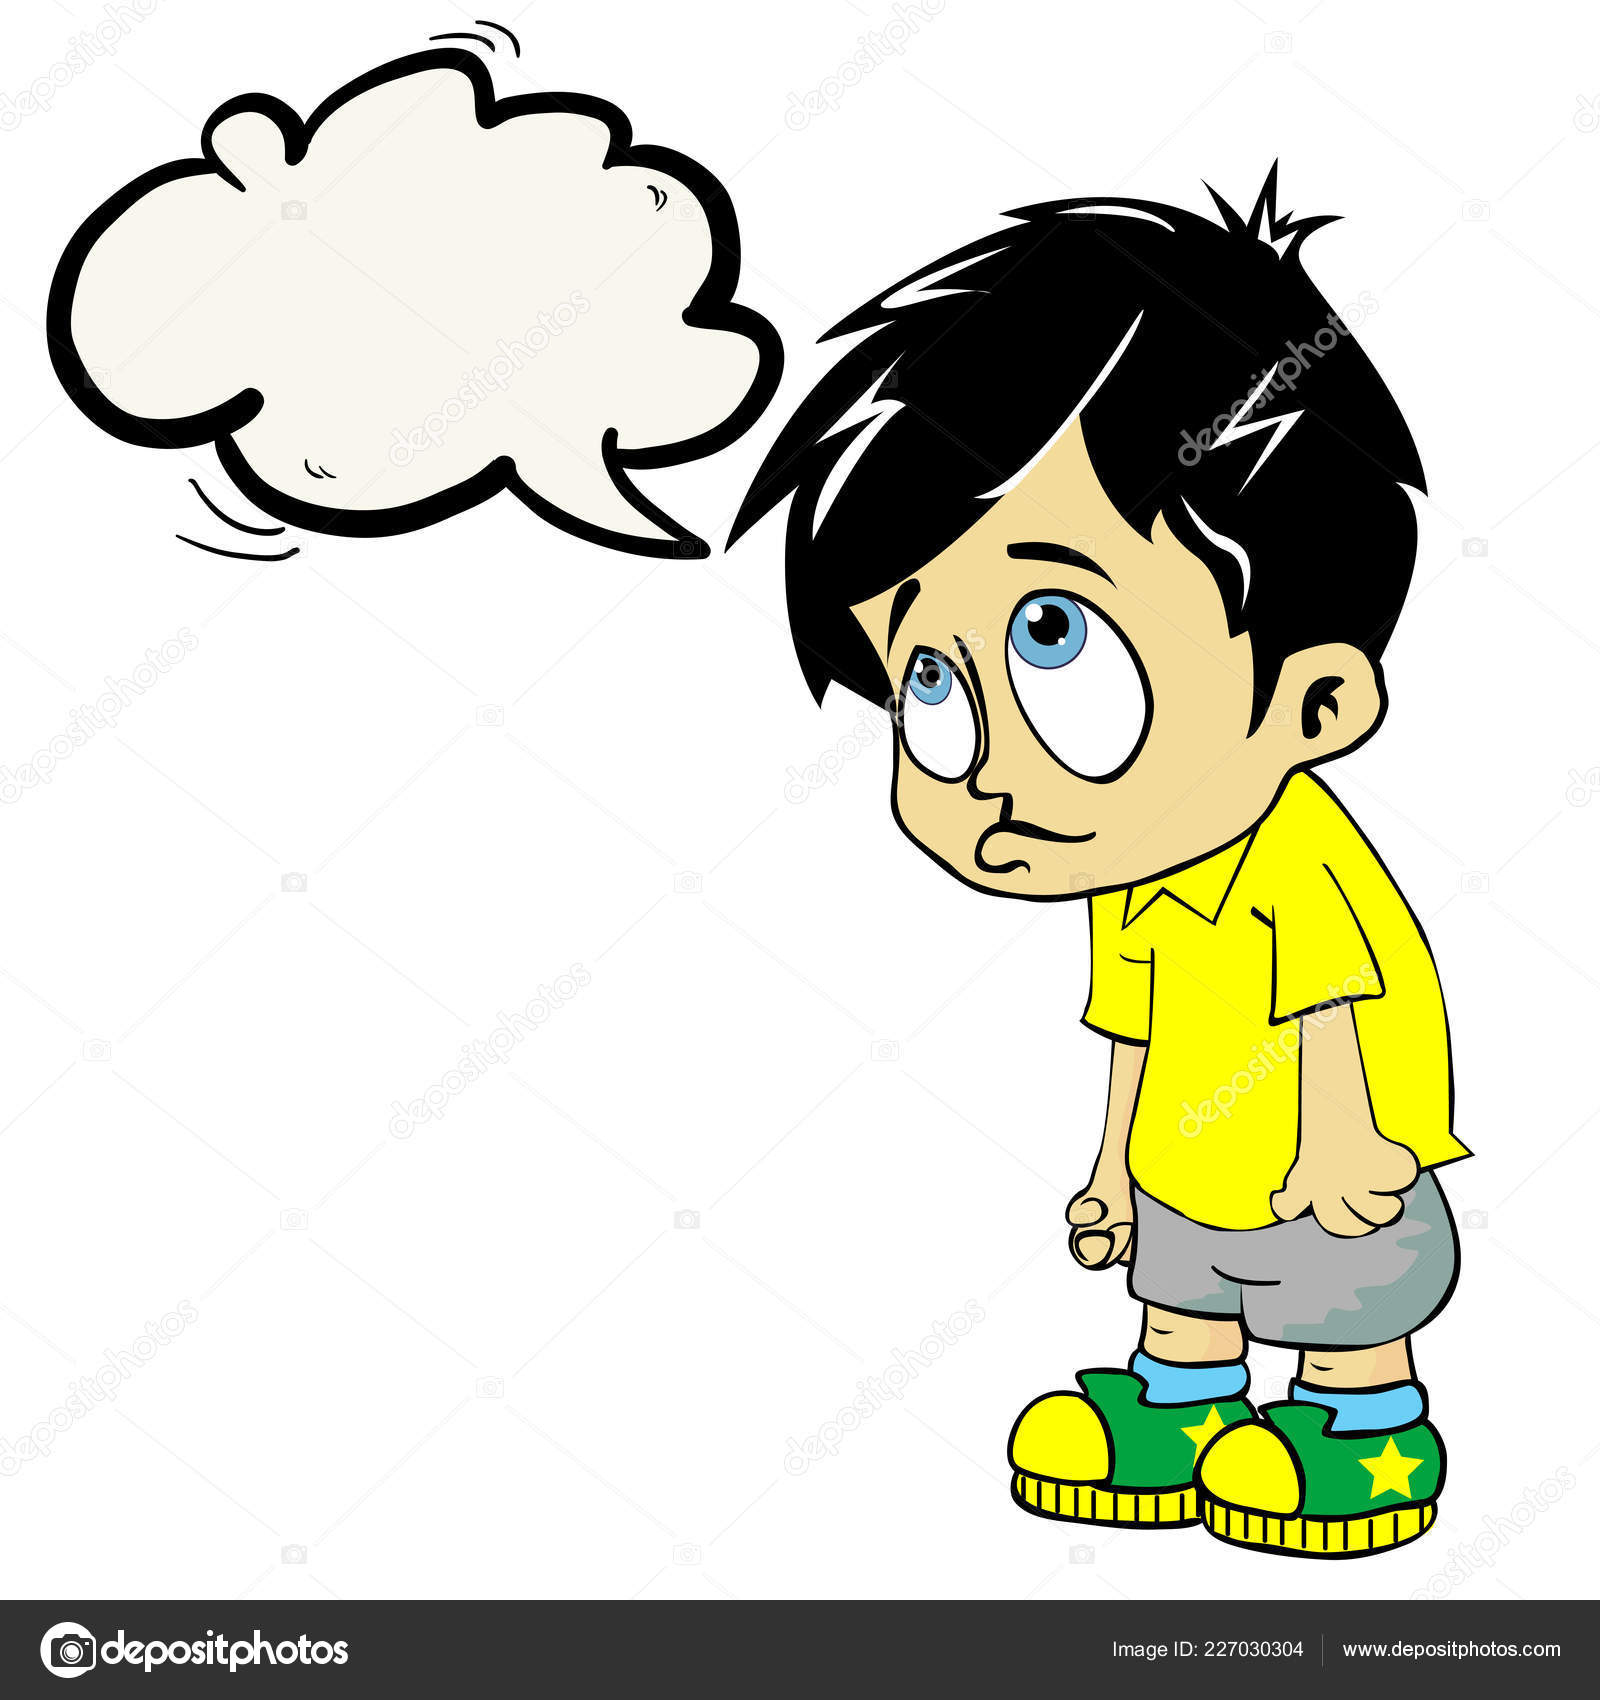 Sad boy cartoon Vector Art Stock Images | Depositphotos